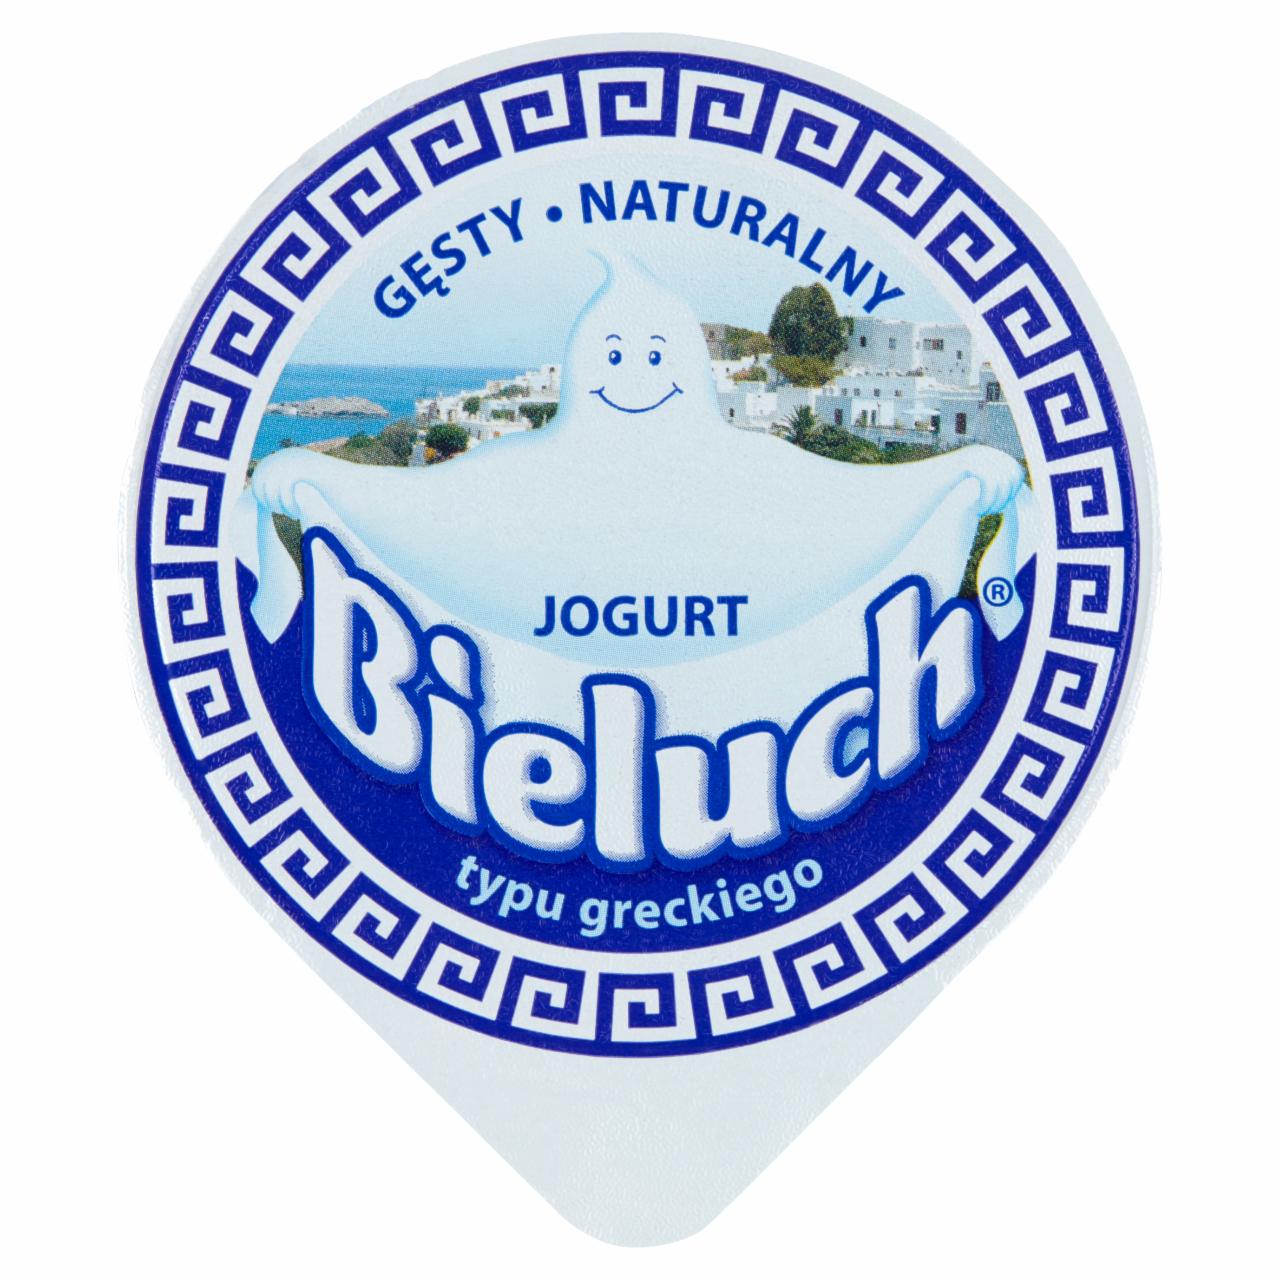 Zdjęcia - Bieluch Gęsty jogurt naturalny typu greckiego 180 g